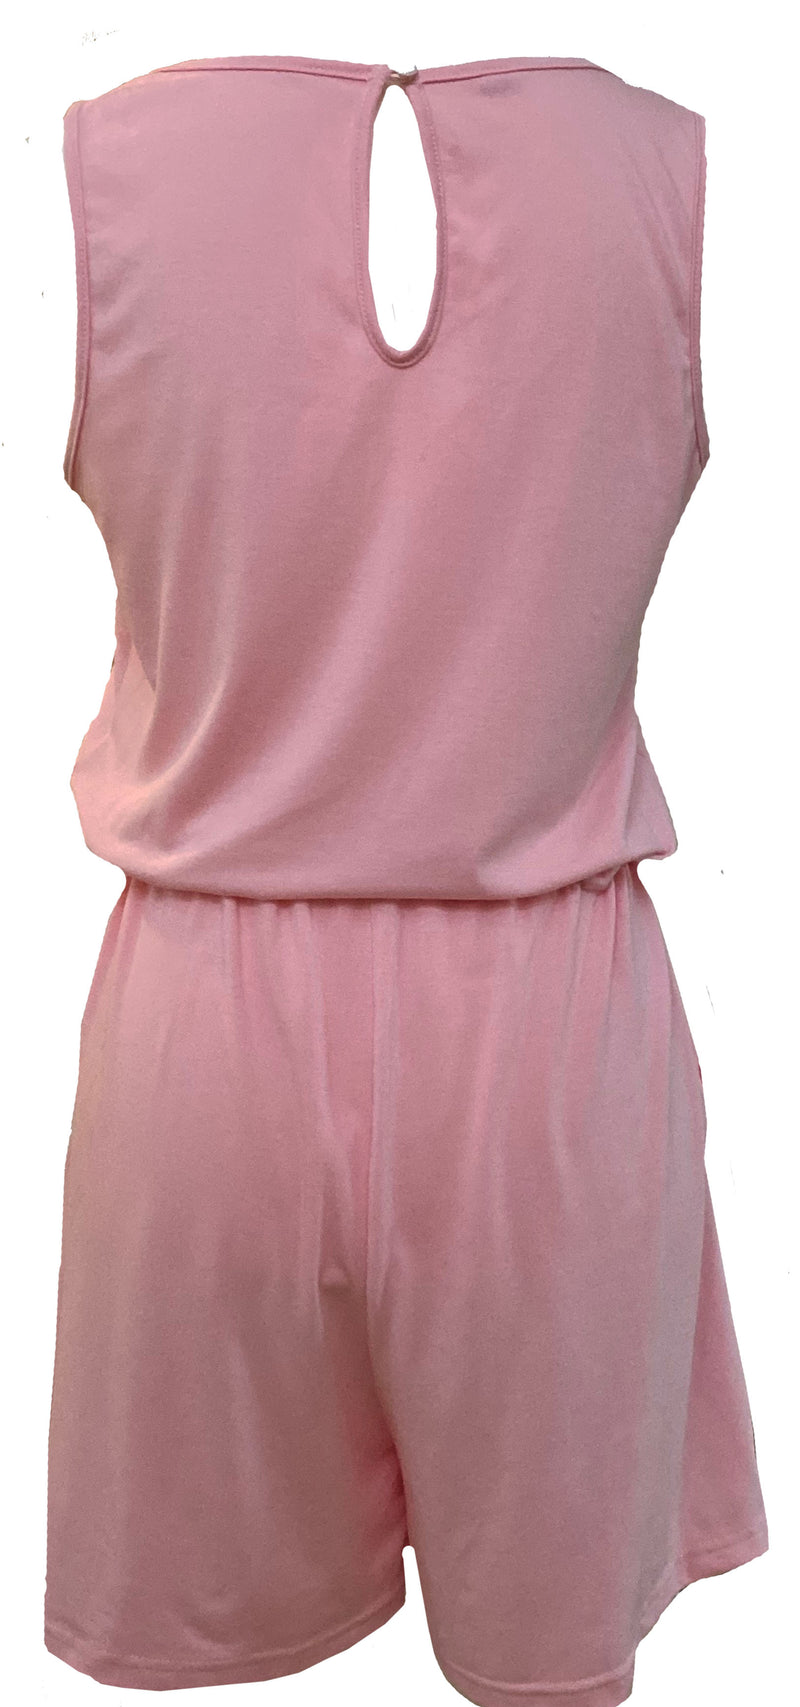 Women’s Pink Summer Sleeveless Tank Top Short Jumpsuit.